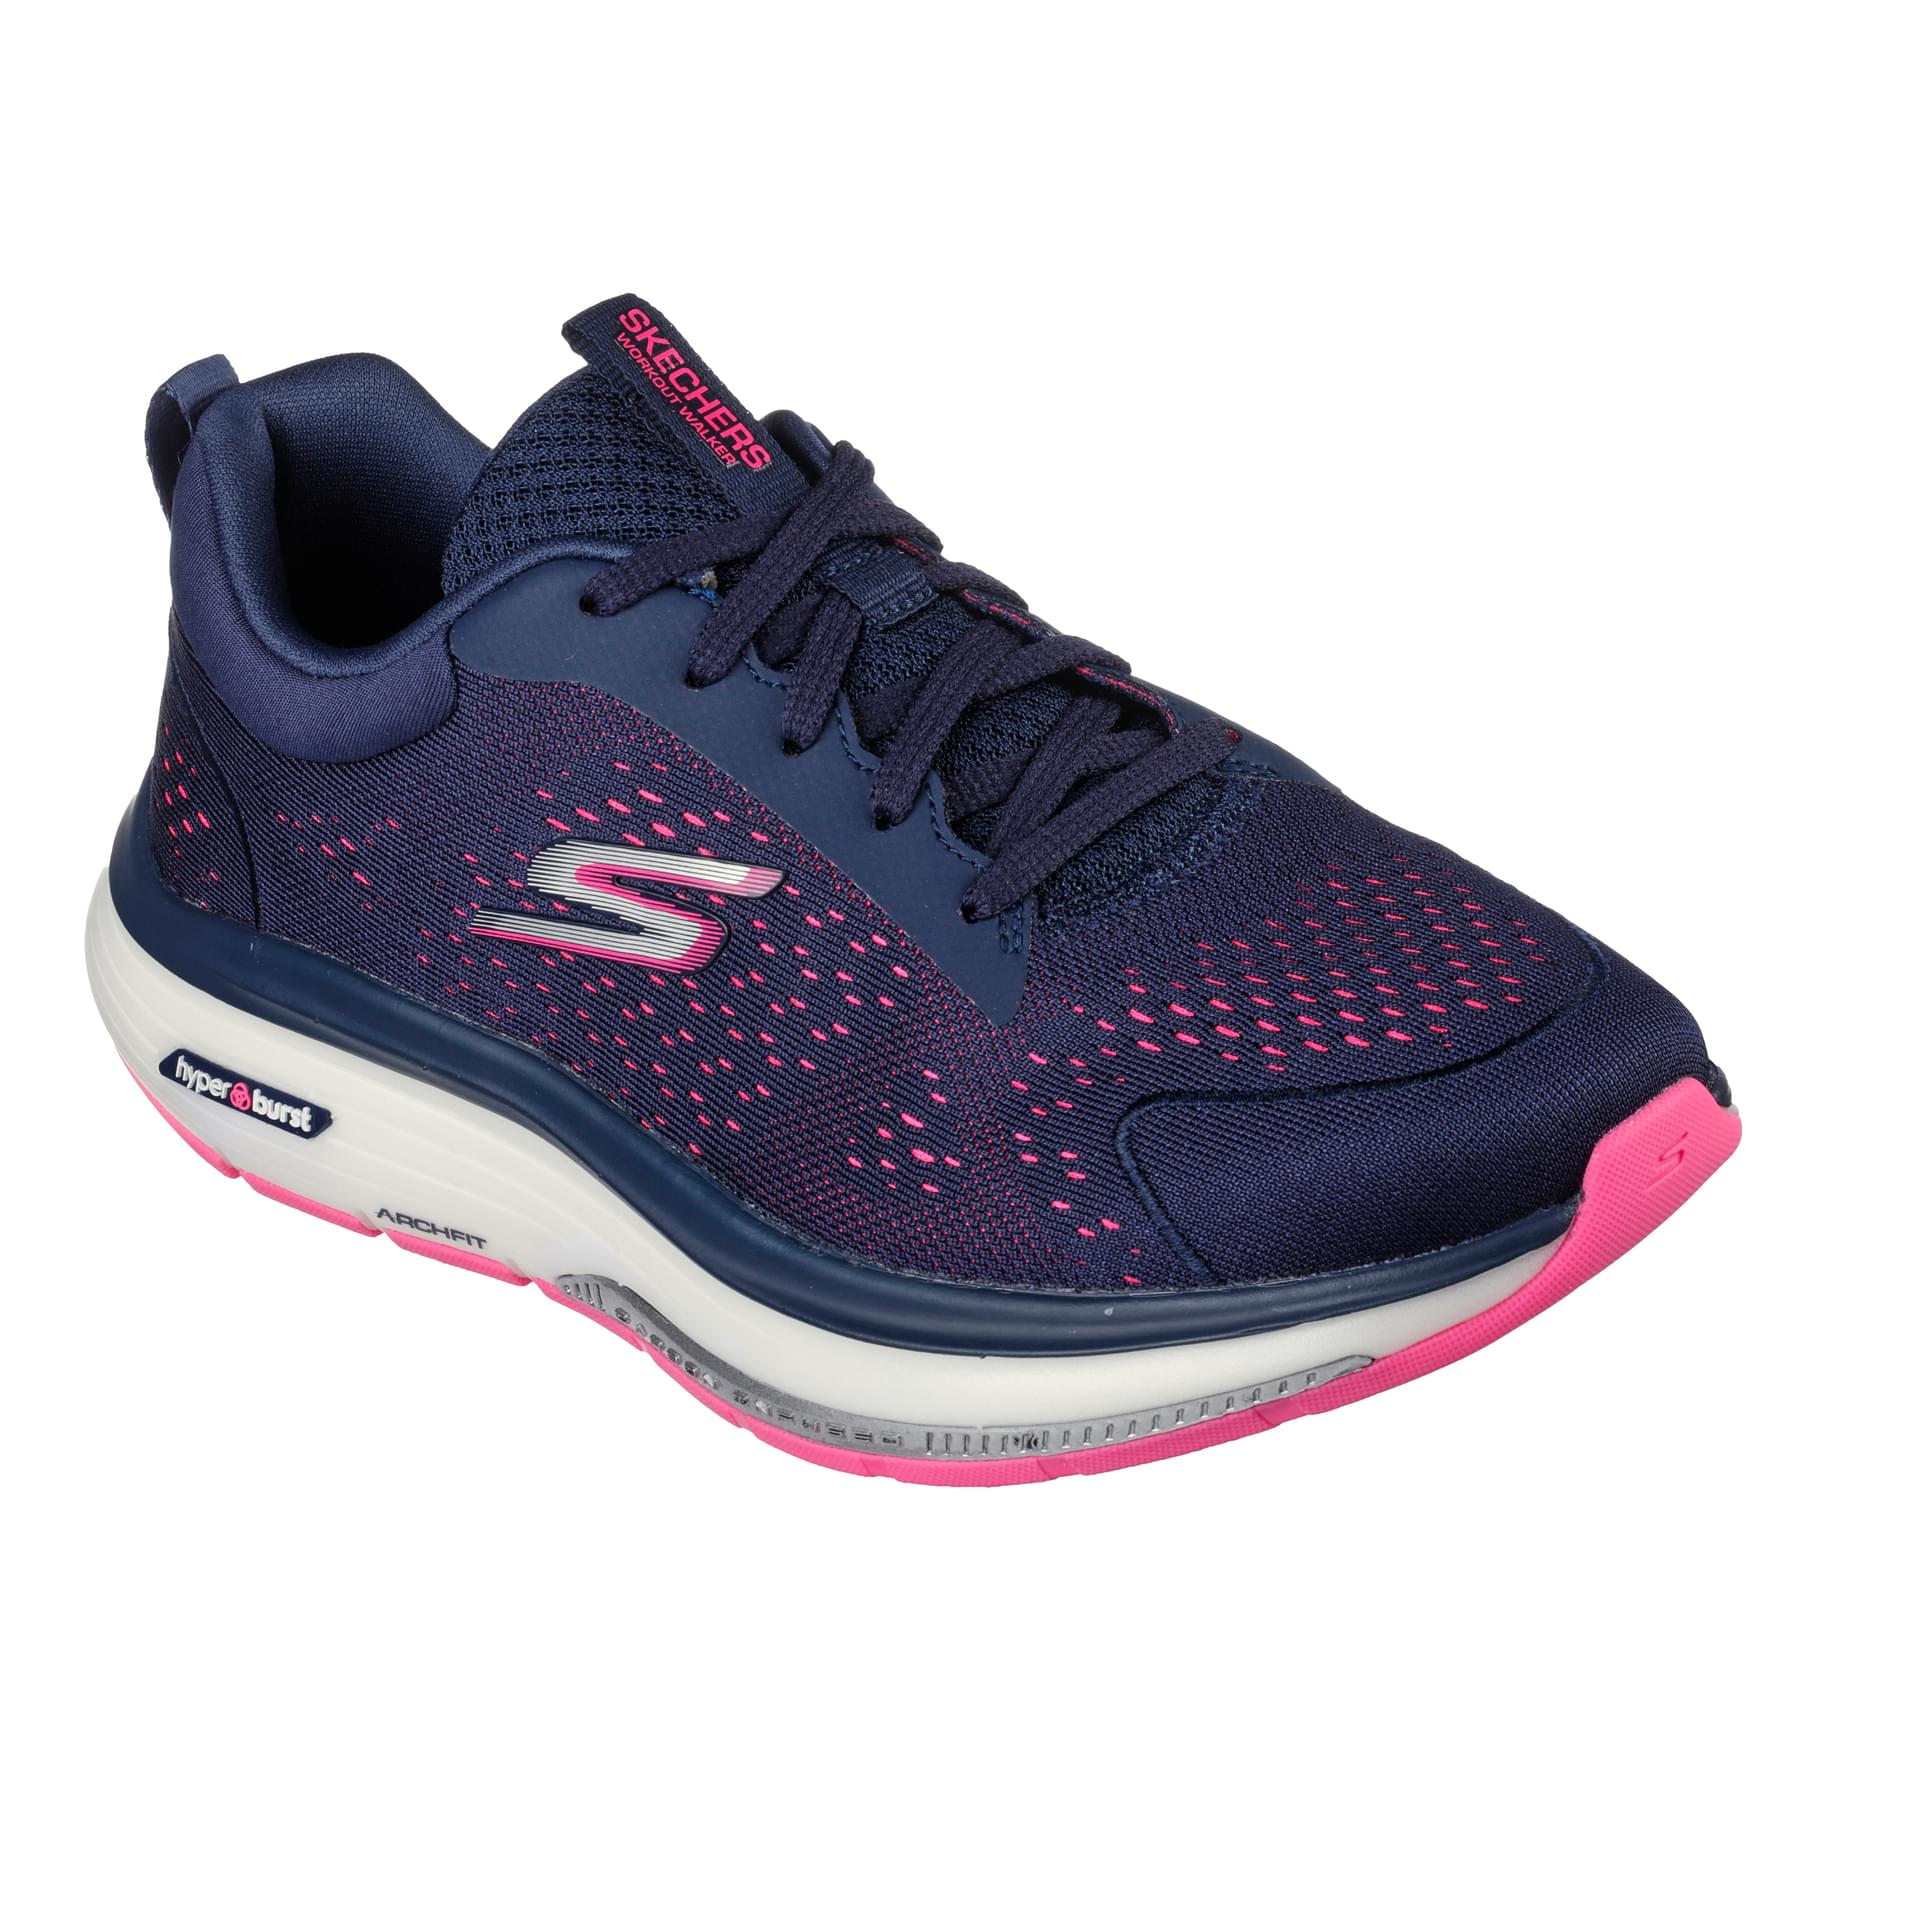 Skechers Go Walk Sneakers 124933 in Navy / Hot Pink